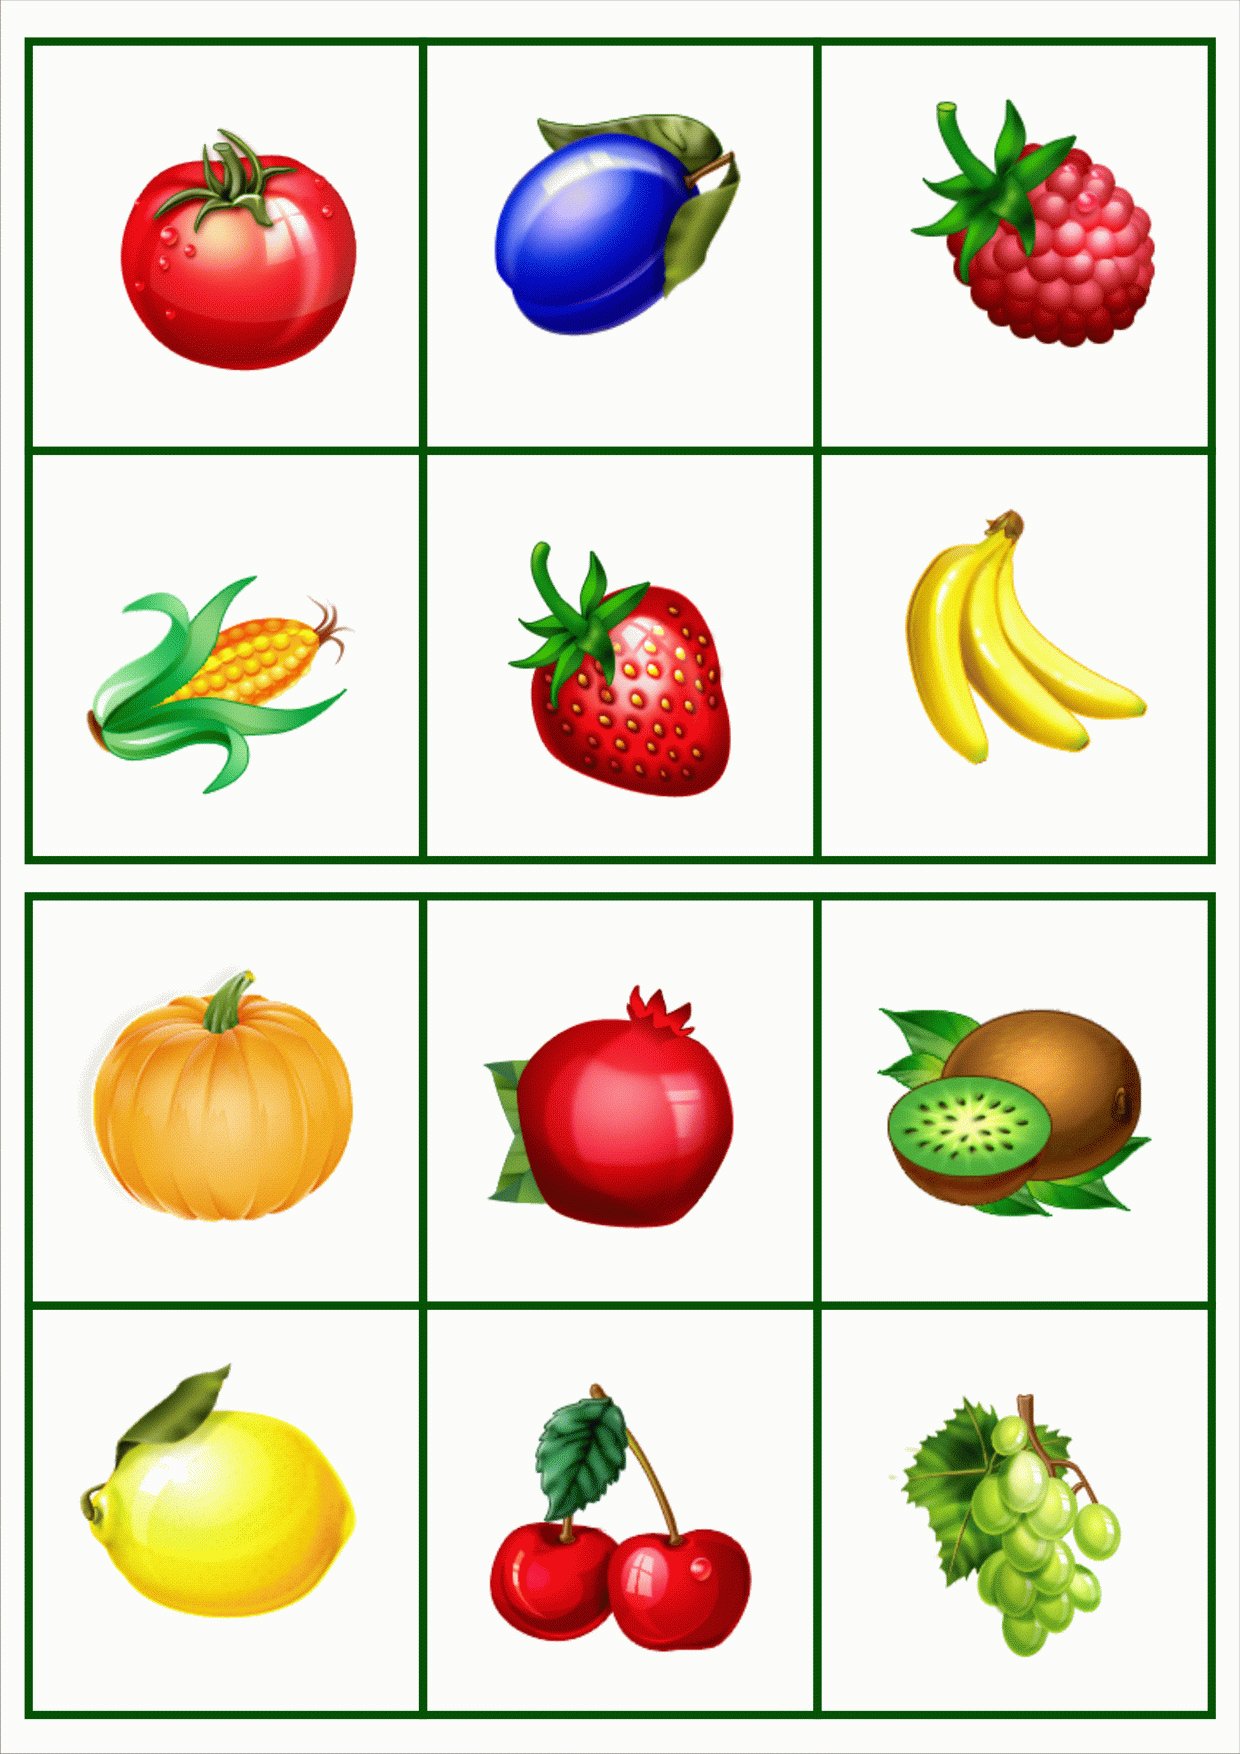 Картинки фруктов карточки. Карточки овощей и фруктов для детей. Карточки с изображением фруктов и овощей. Овощи и фрукты для детей. Карточки фрукты и овощи для детей.